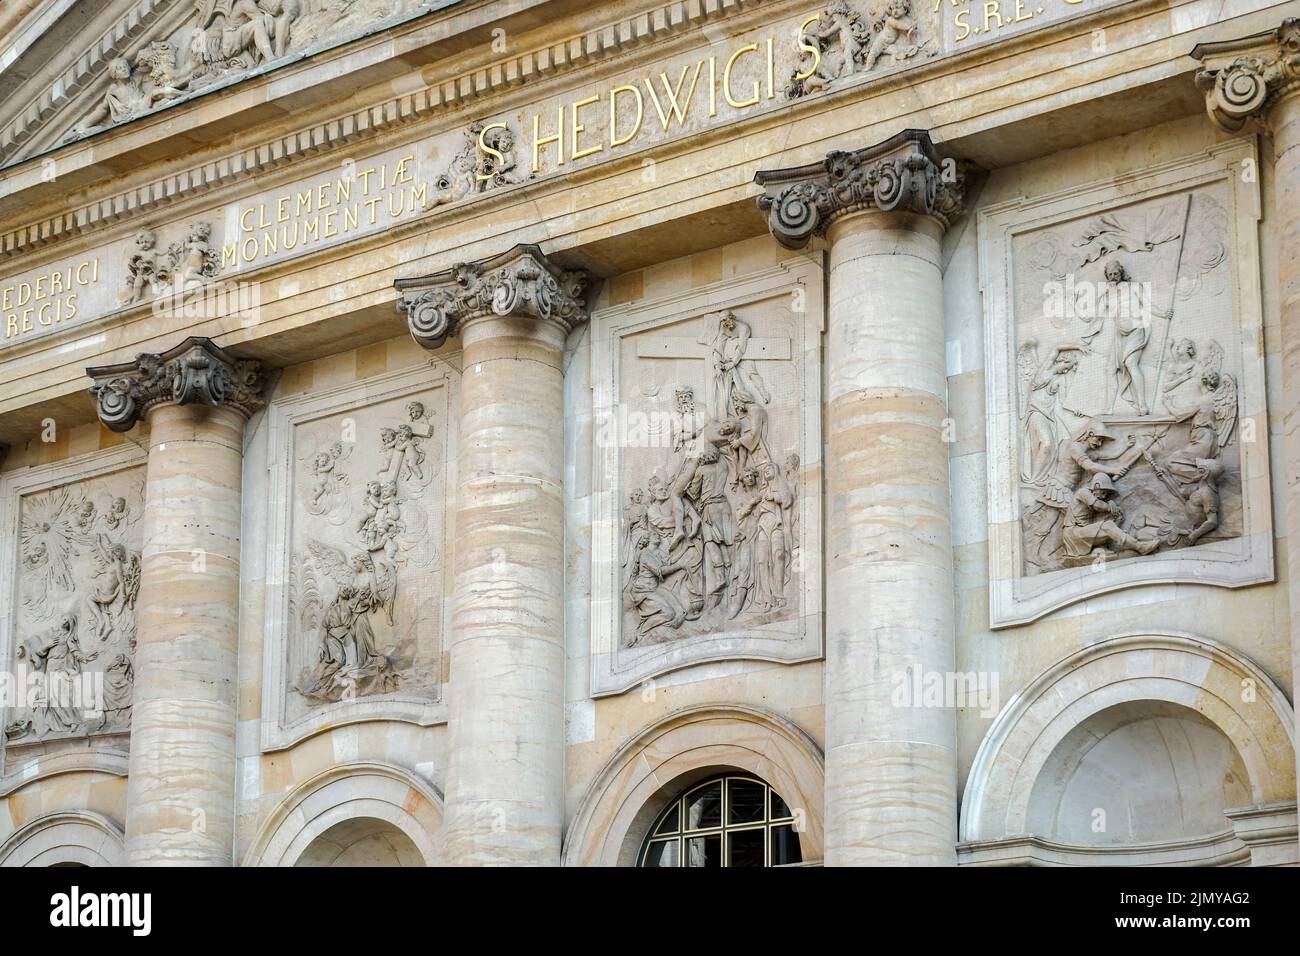 Berlín, Alemania, 2014. Catedral de Santa Hedwig en Berlín Foto de stock